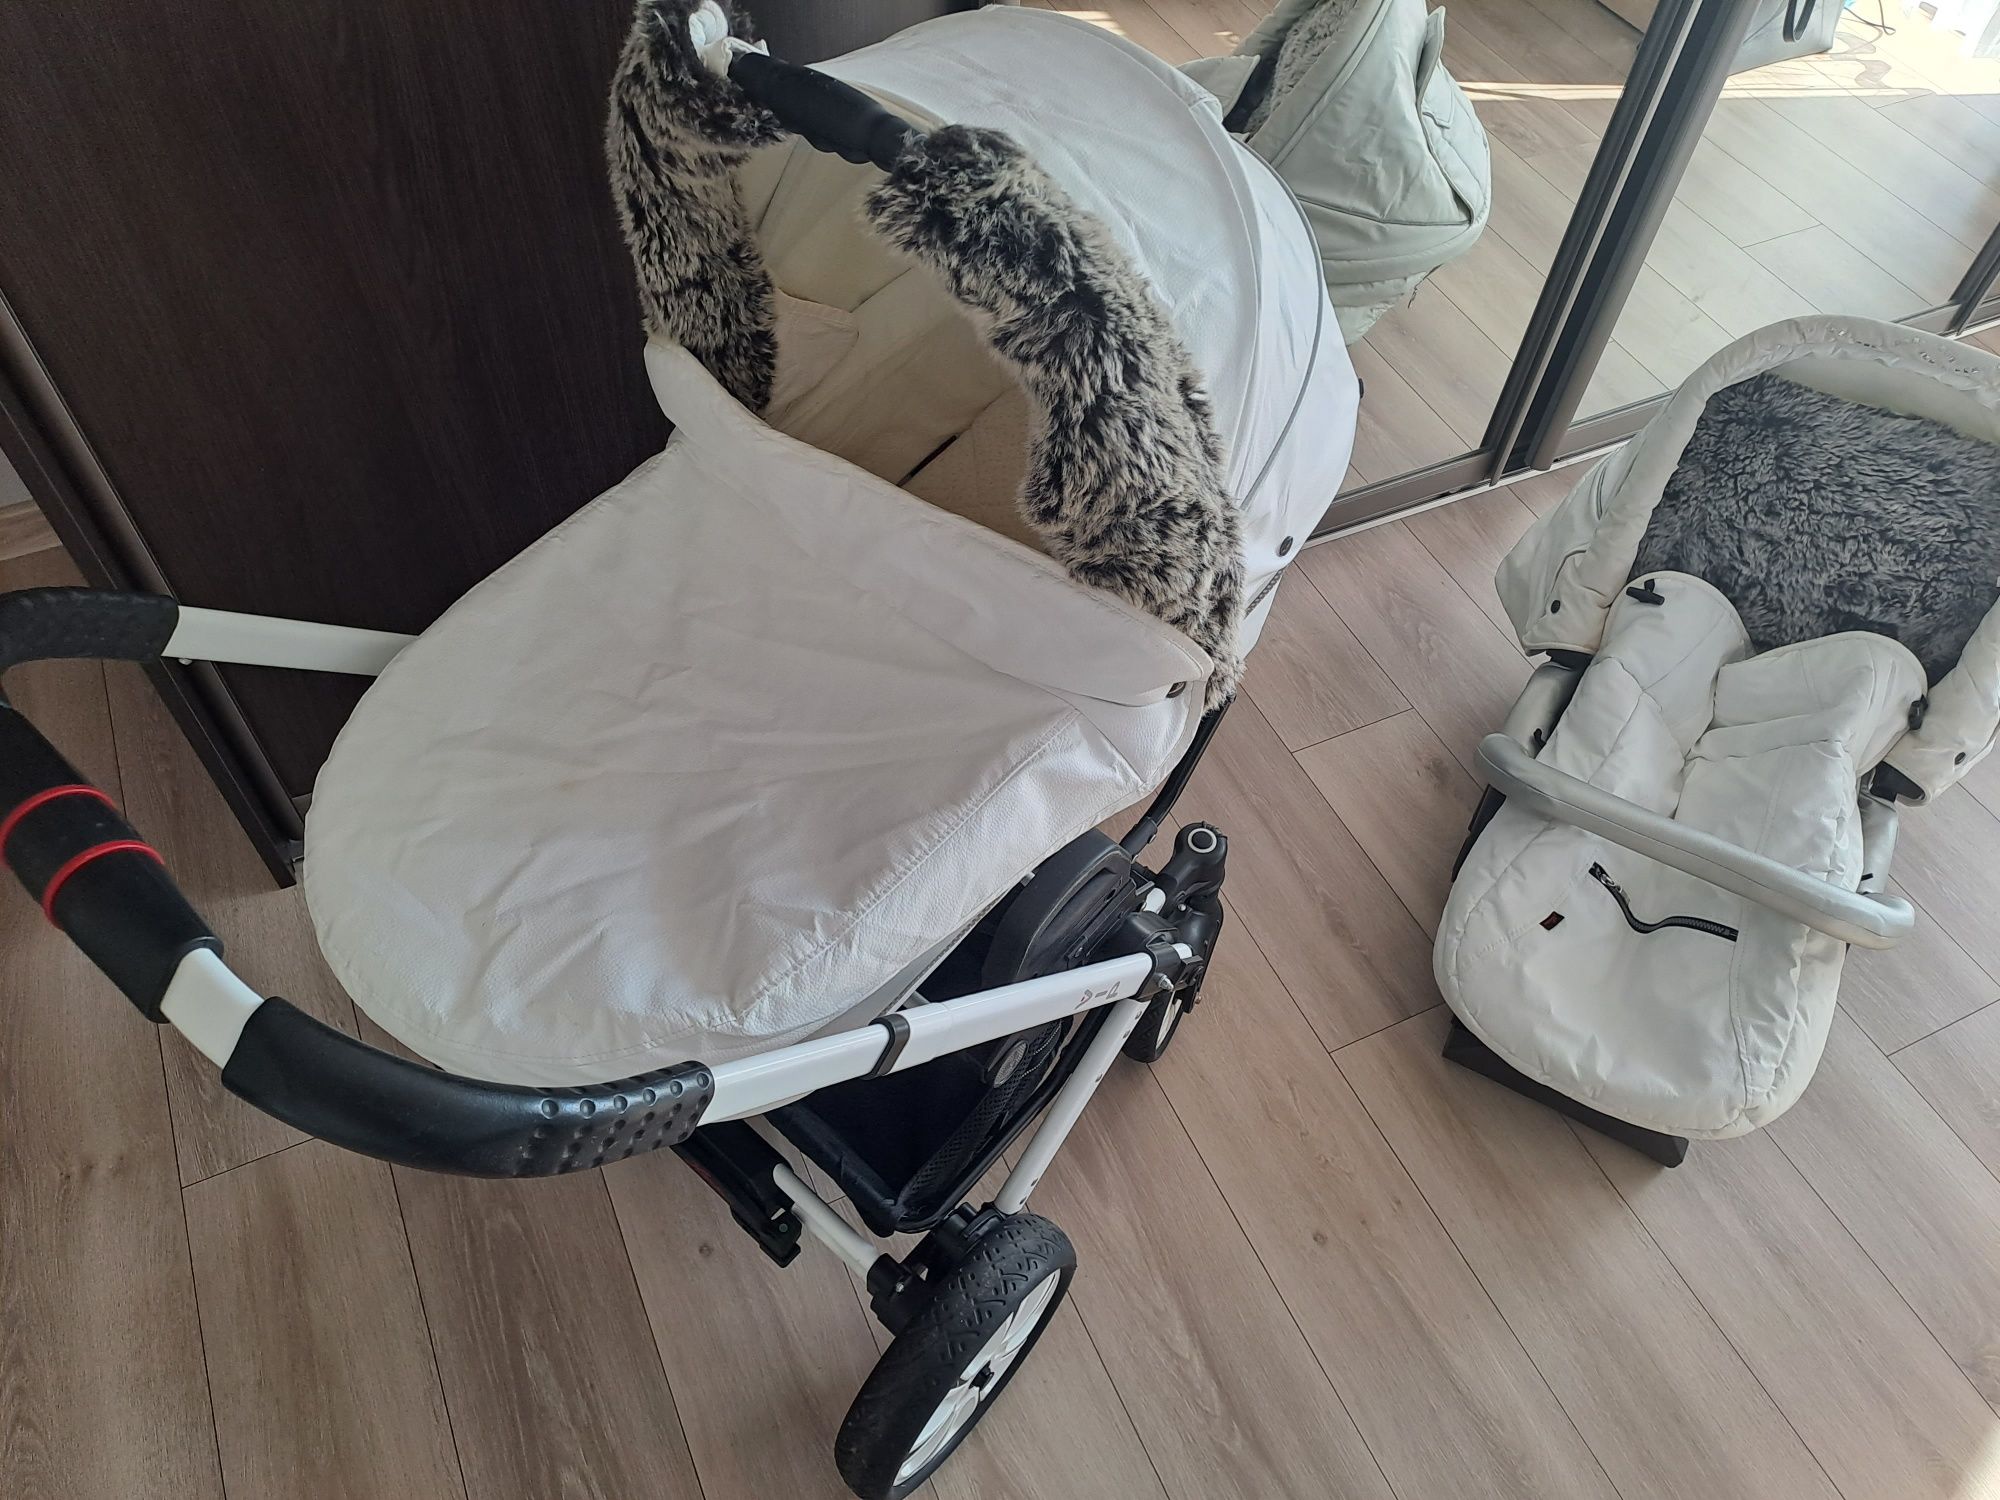 OKAZJA   Wózek dziecięcy 2w1 + Poduszka ciążowa GRATIS